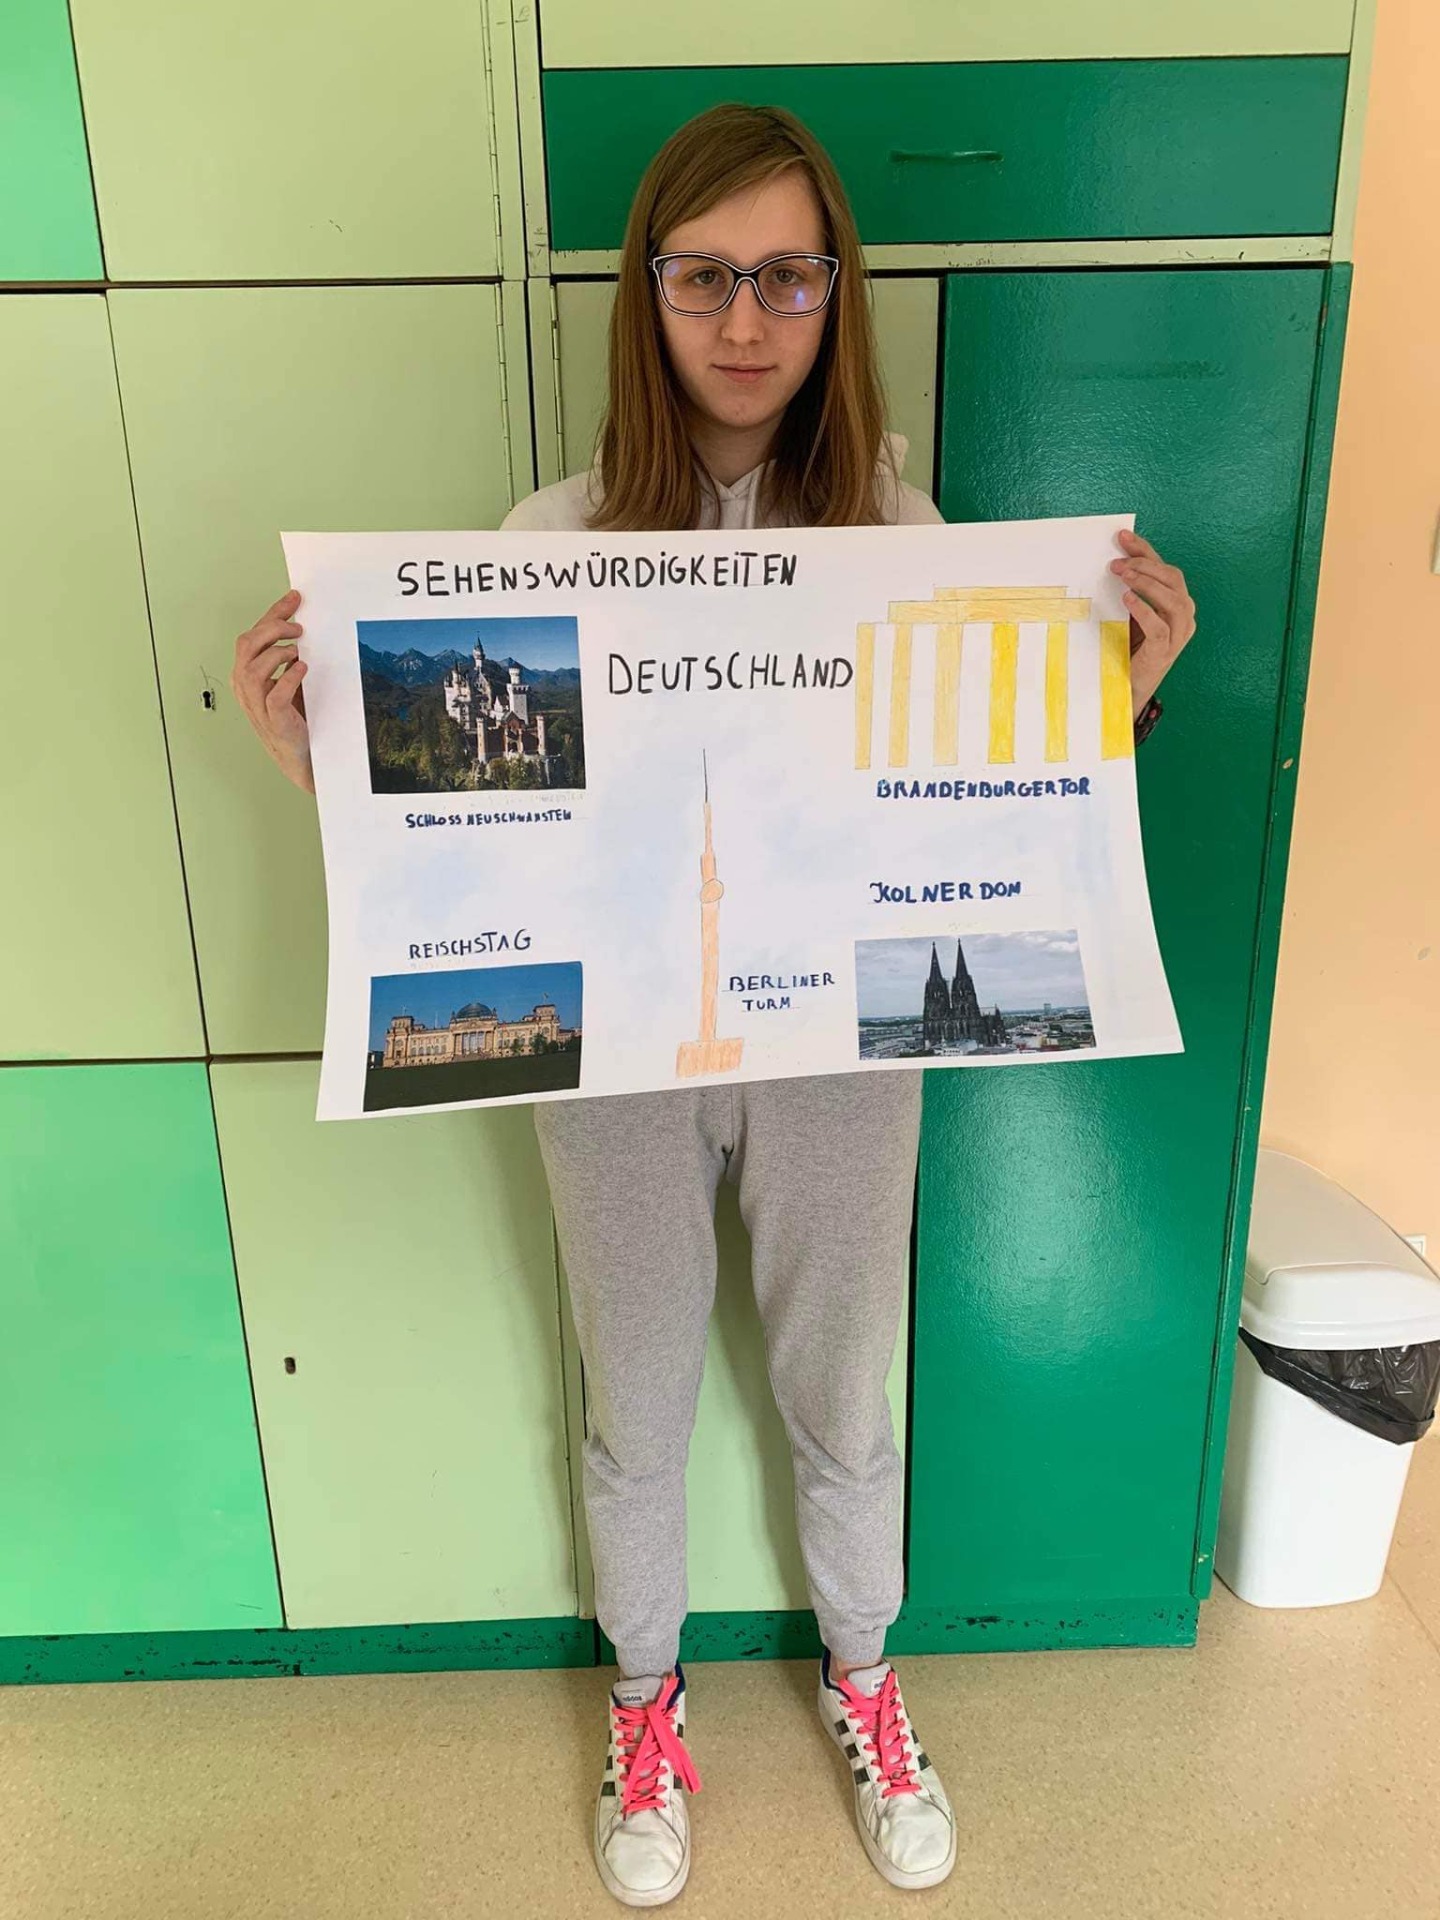 Julia wraz z wykonanym przez siebie plakatem dotyczącym zabytków wartych zobaczenia w Niemczech.